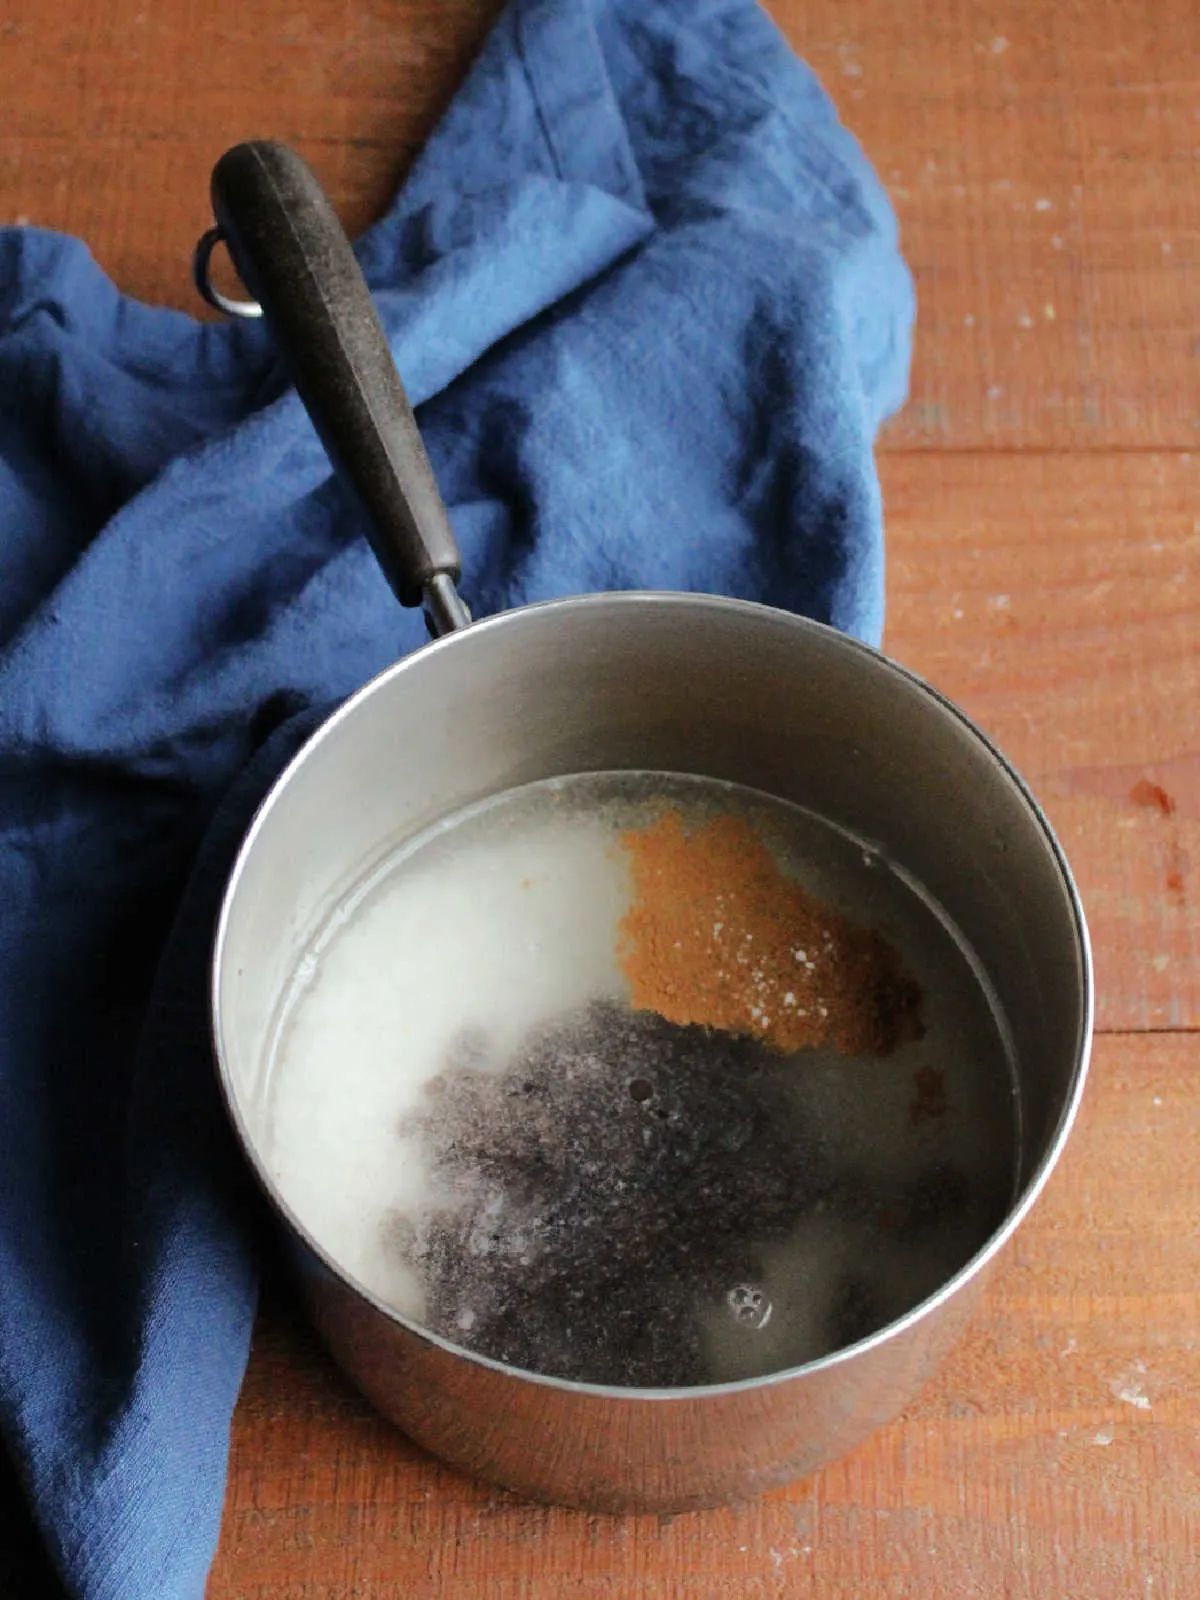 Rice, raisins, cinnamon, and salt soaking in water in saucepan.